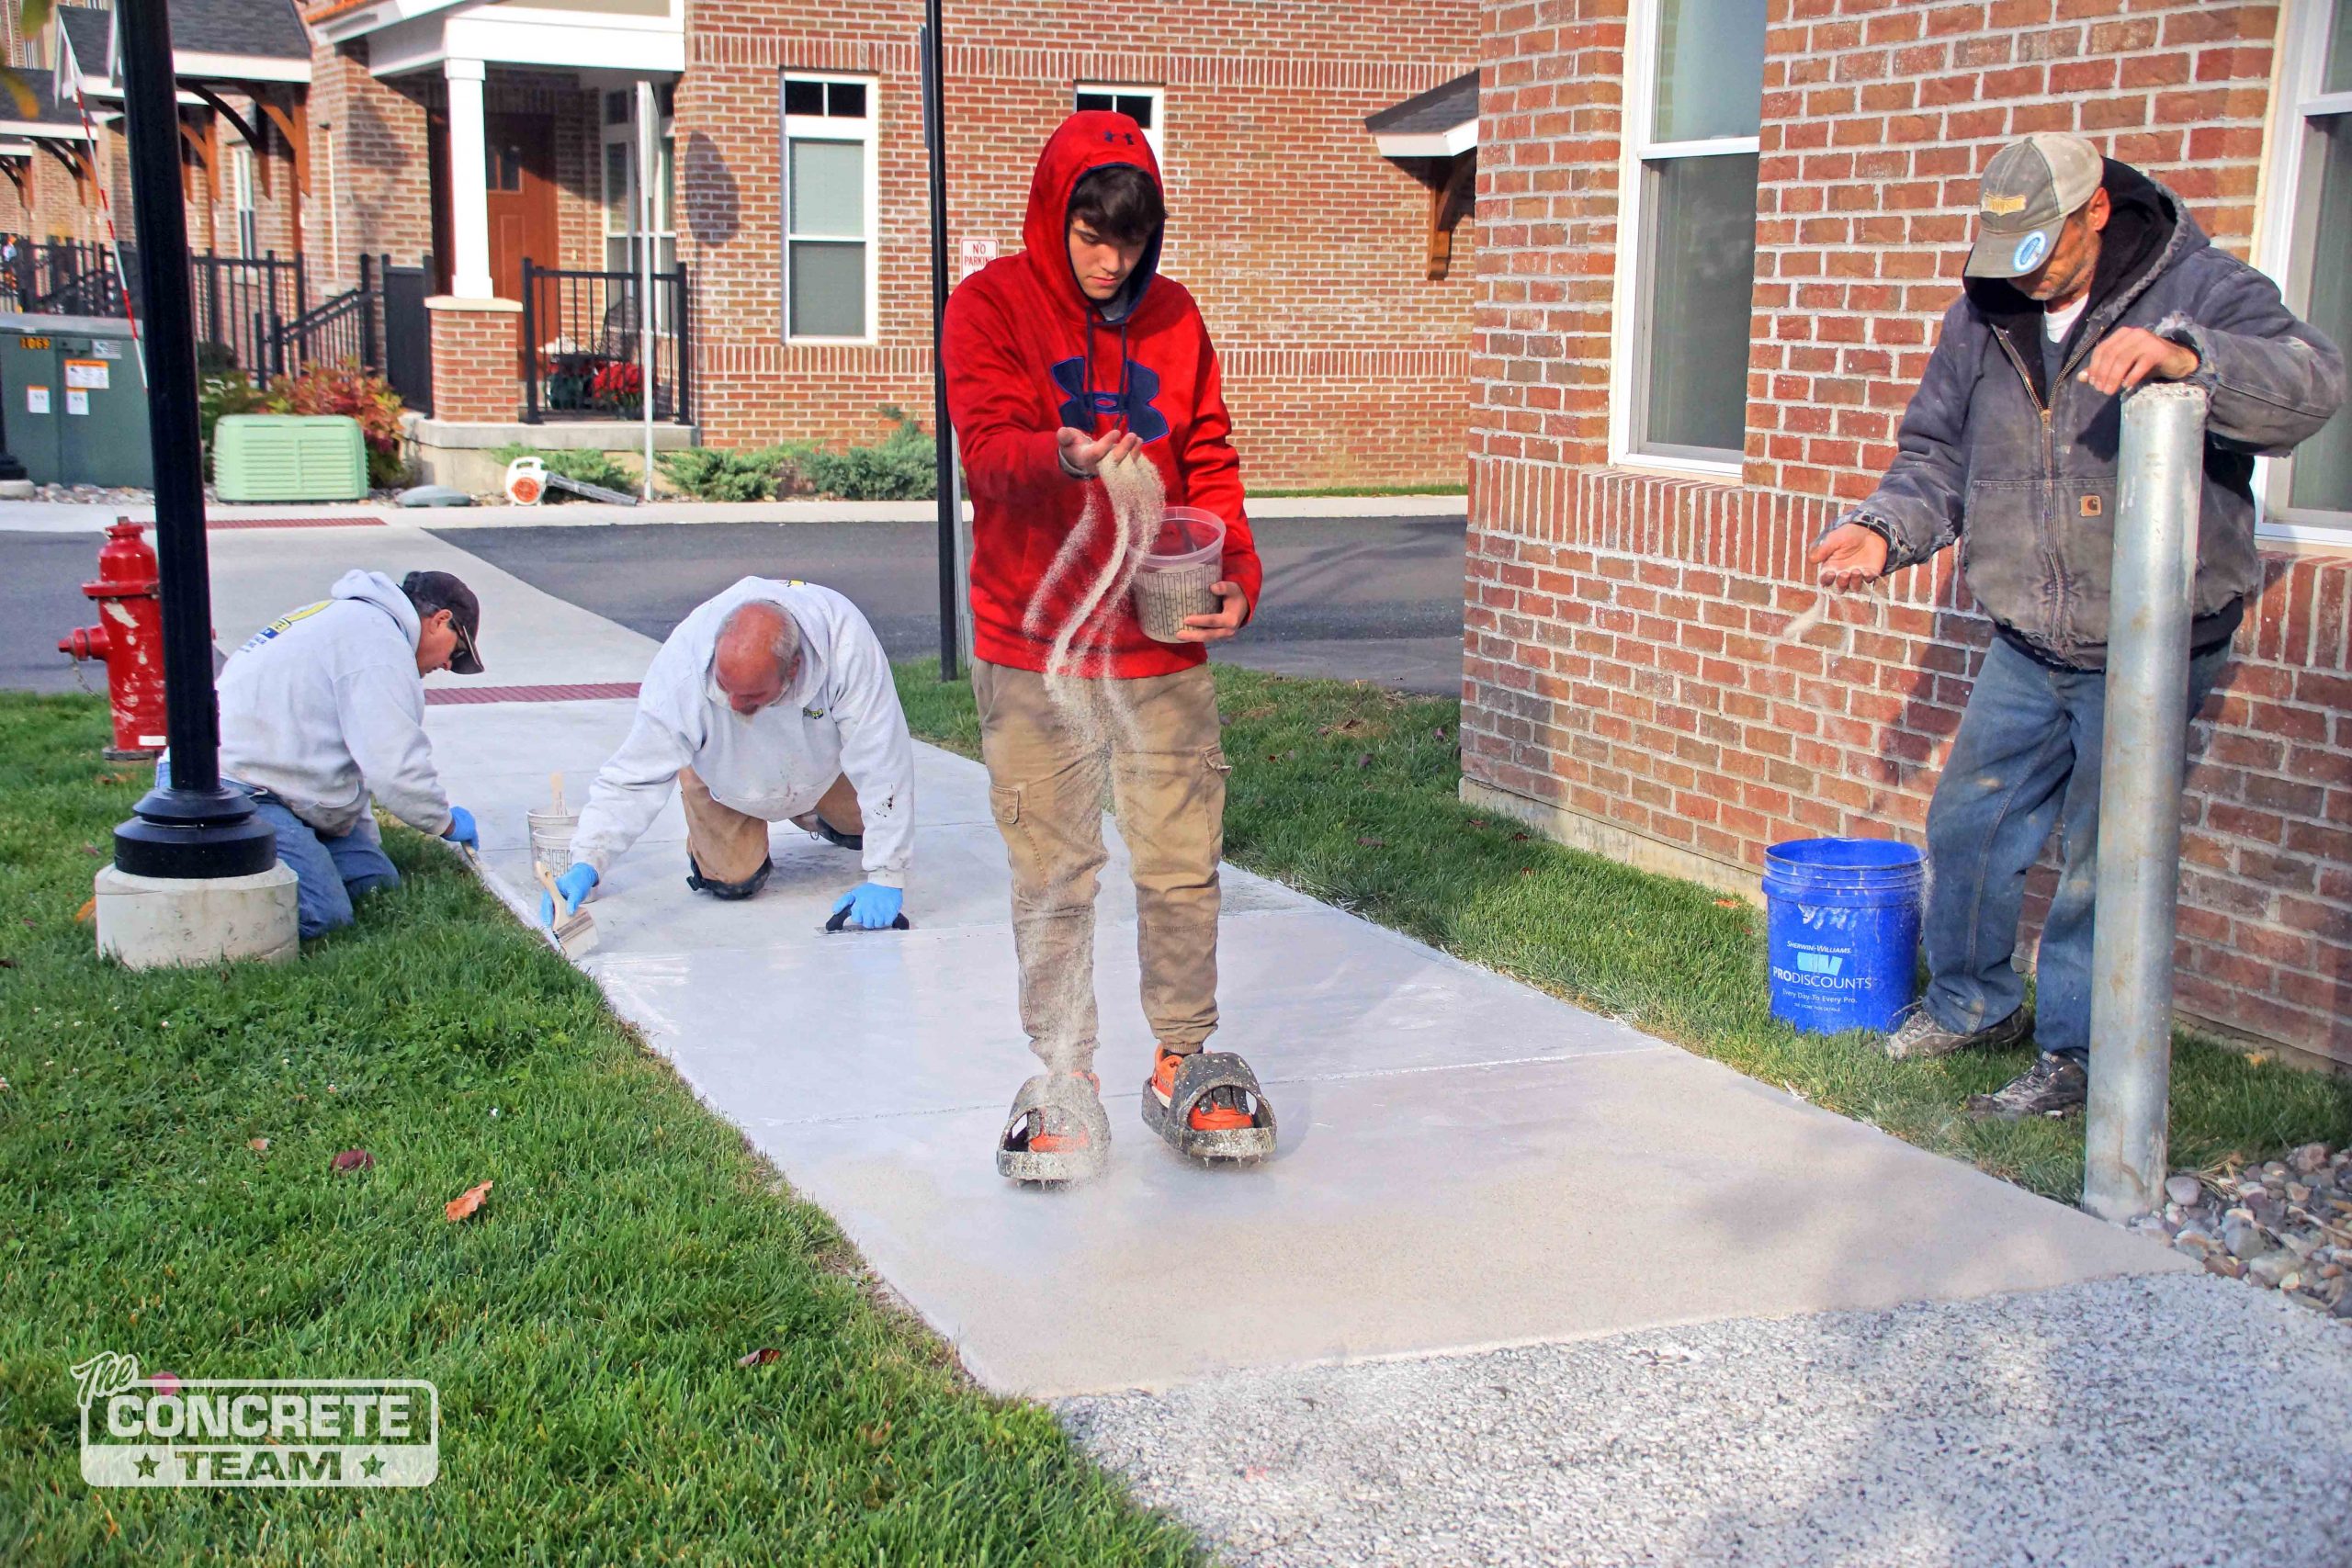 Four young men resurfacing a concrete sidewalk